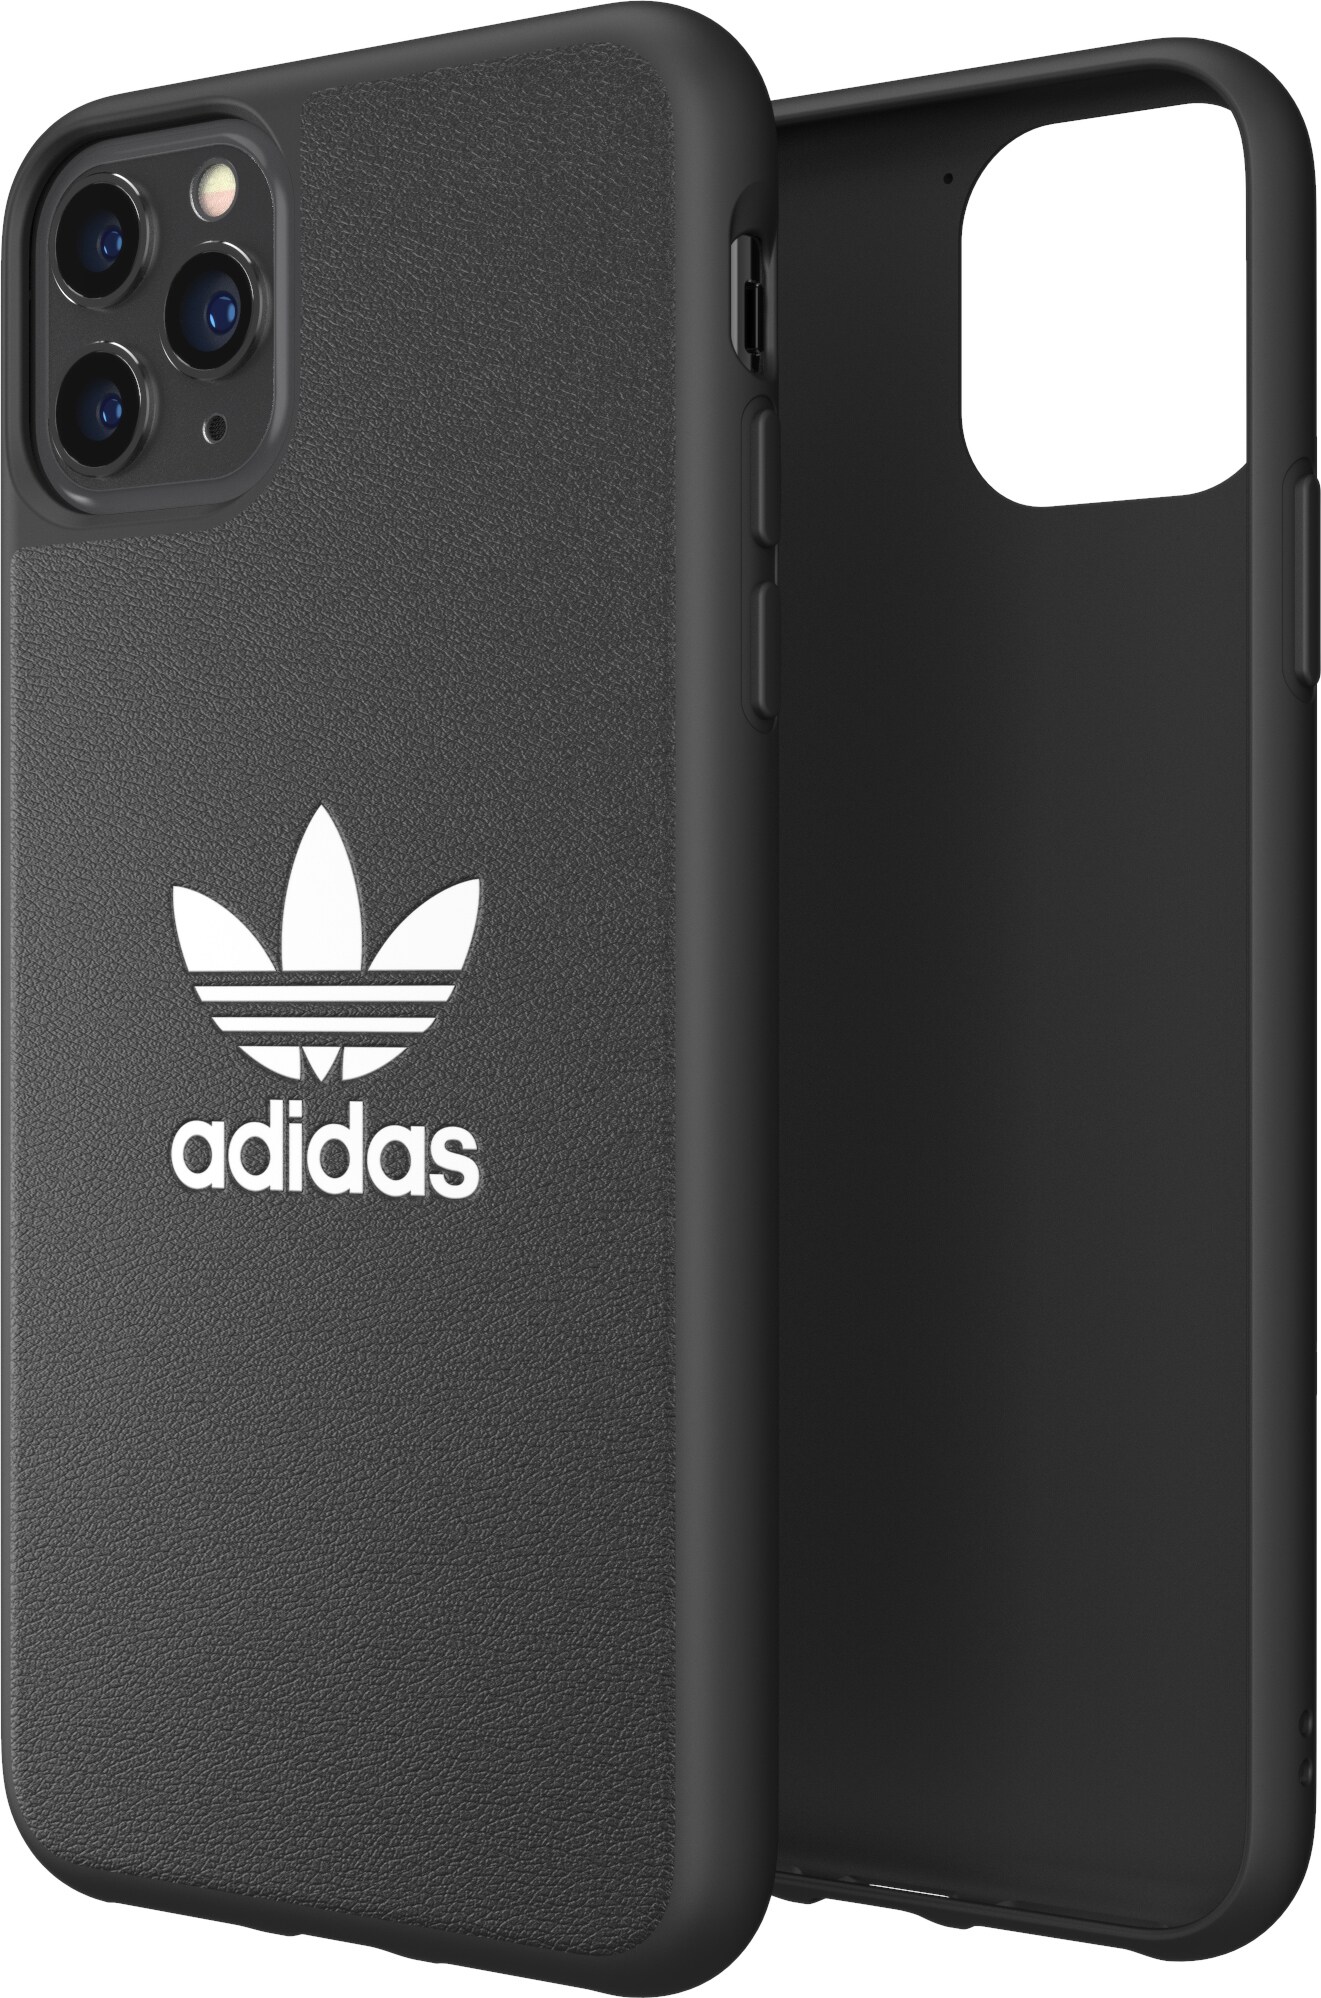 Adidas formstøpt deksel til iPhone 11 Pro Max (sort/hvit) - Deksler og etui  til mobiltelefon - Elkjøp